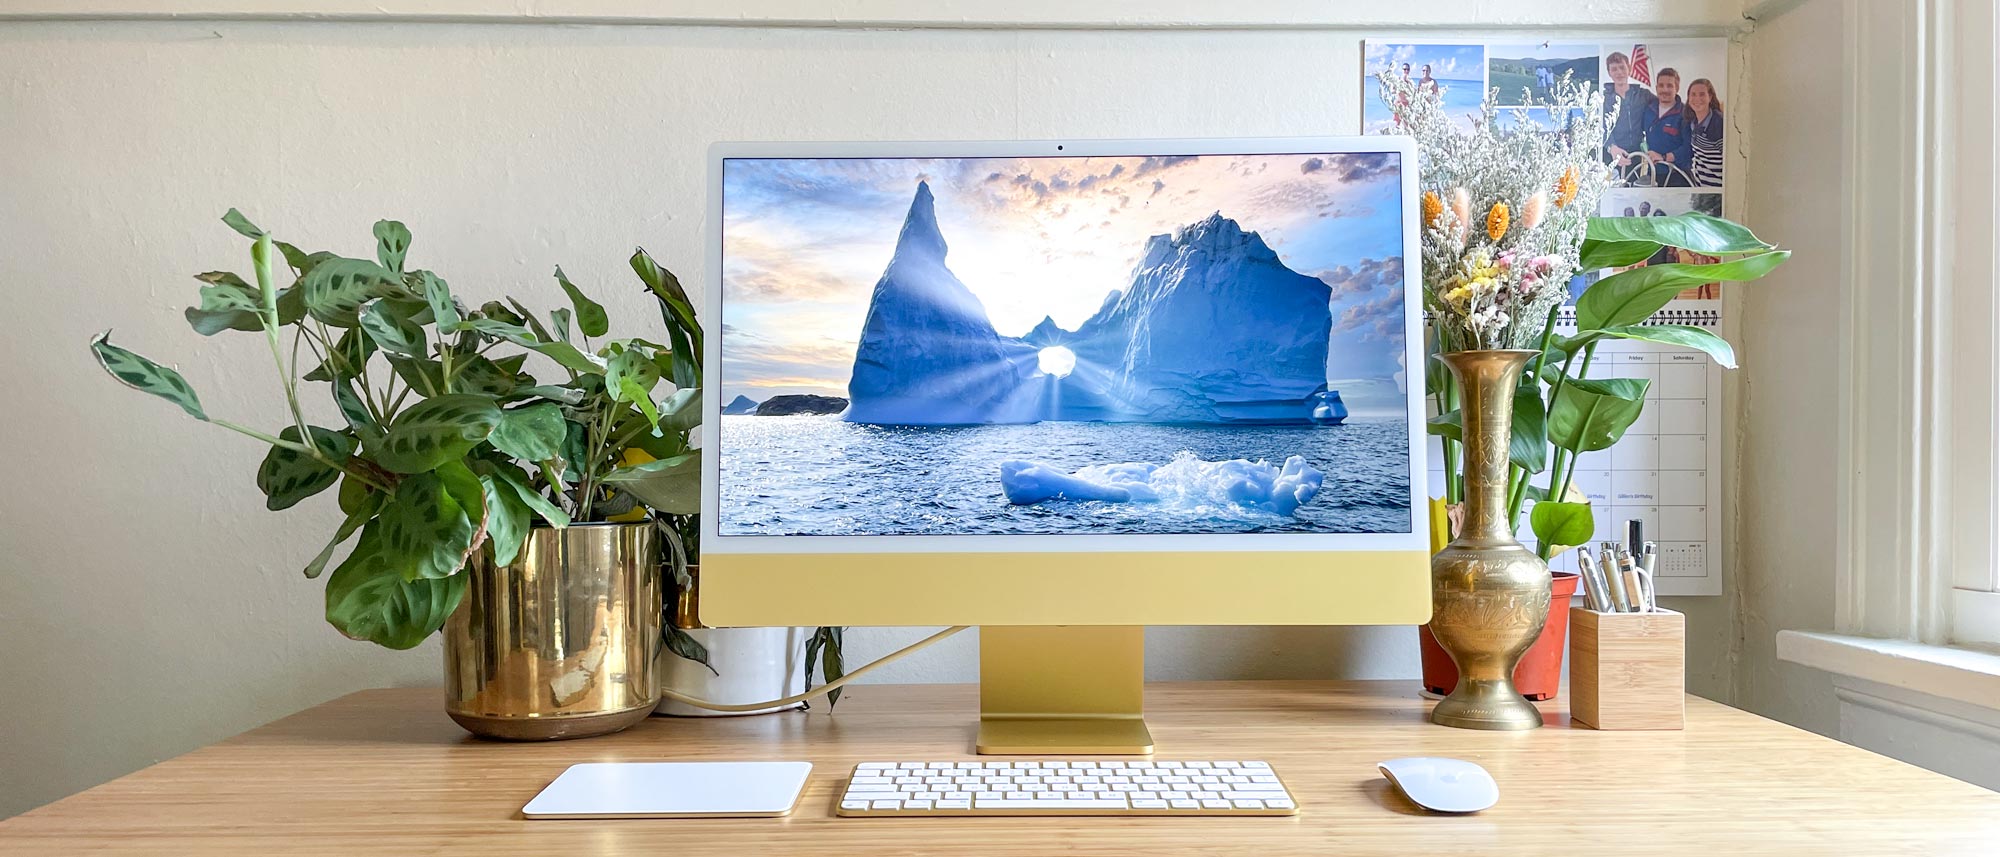 L'iMac 24 pouces d'Apple est une machine mince et rapide dotée d'excellents haut-parleurs, d'une excellente webcam et d'un bel écran.